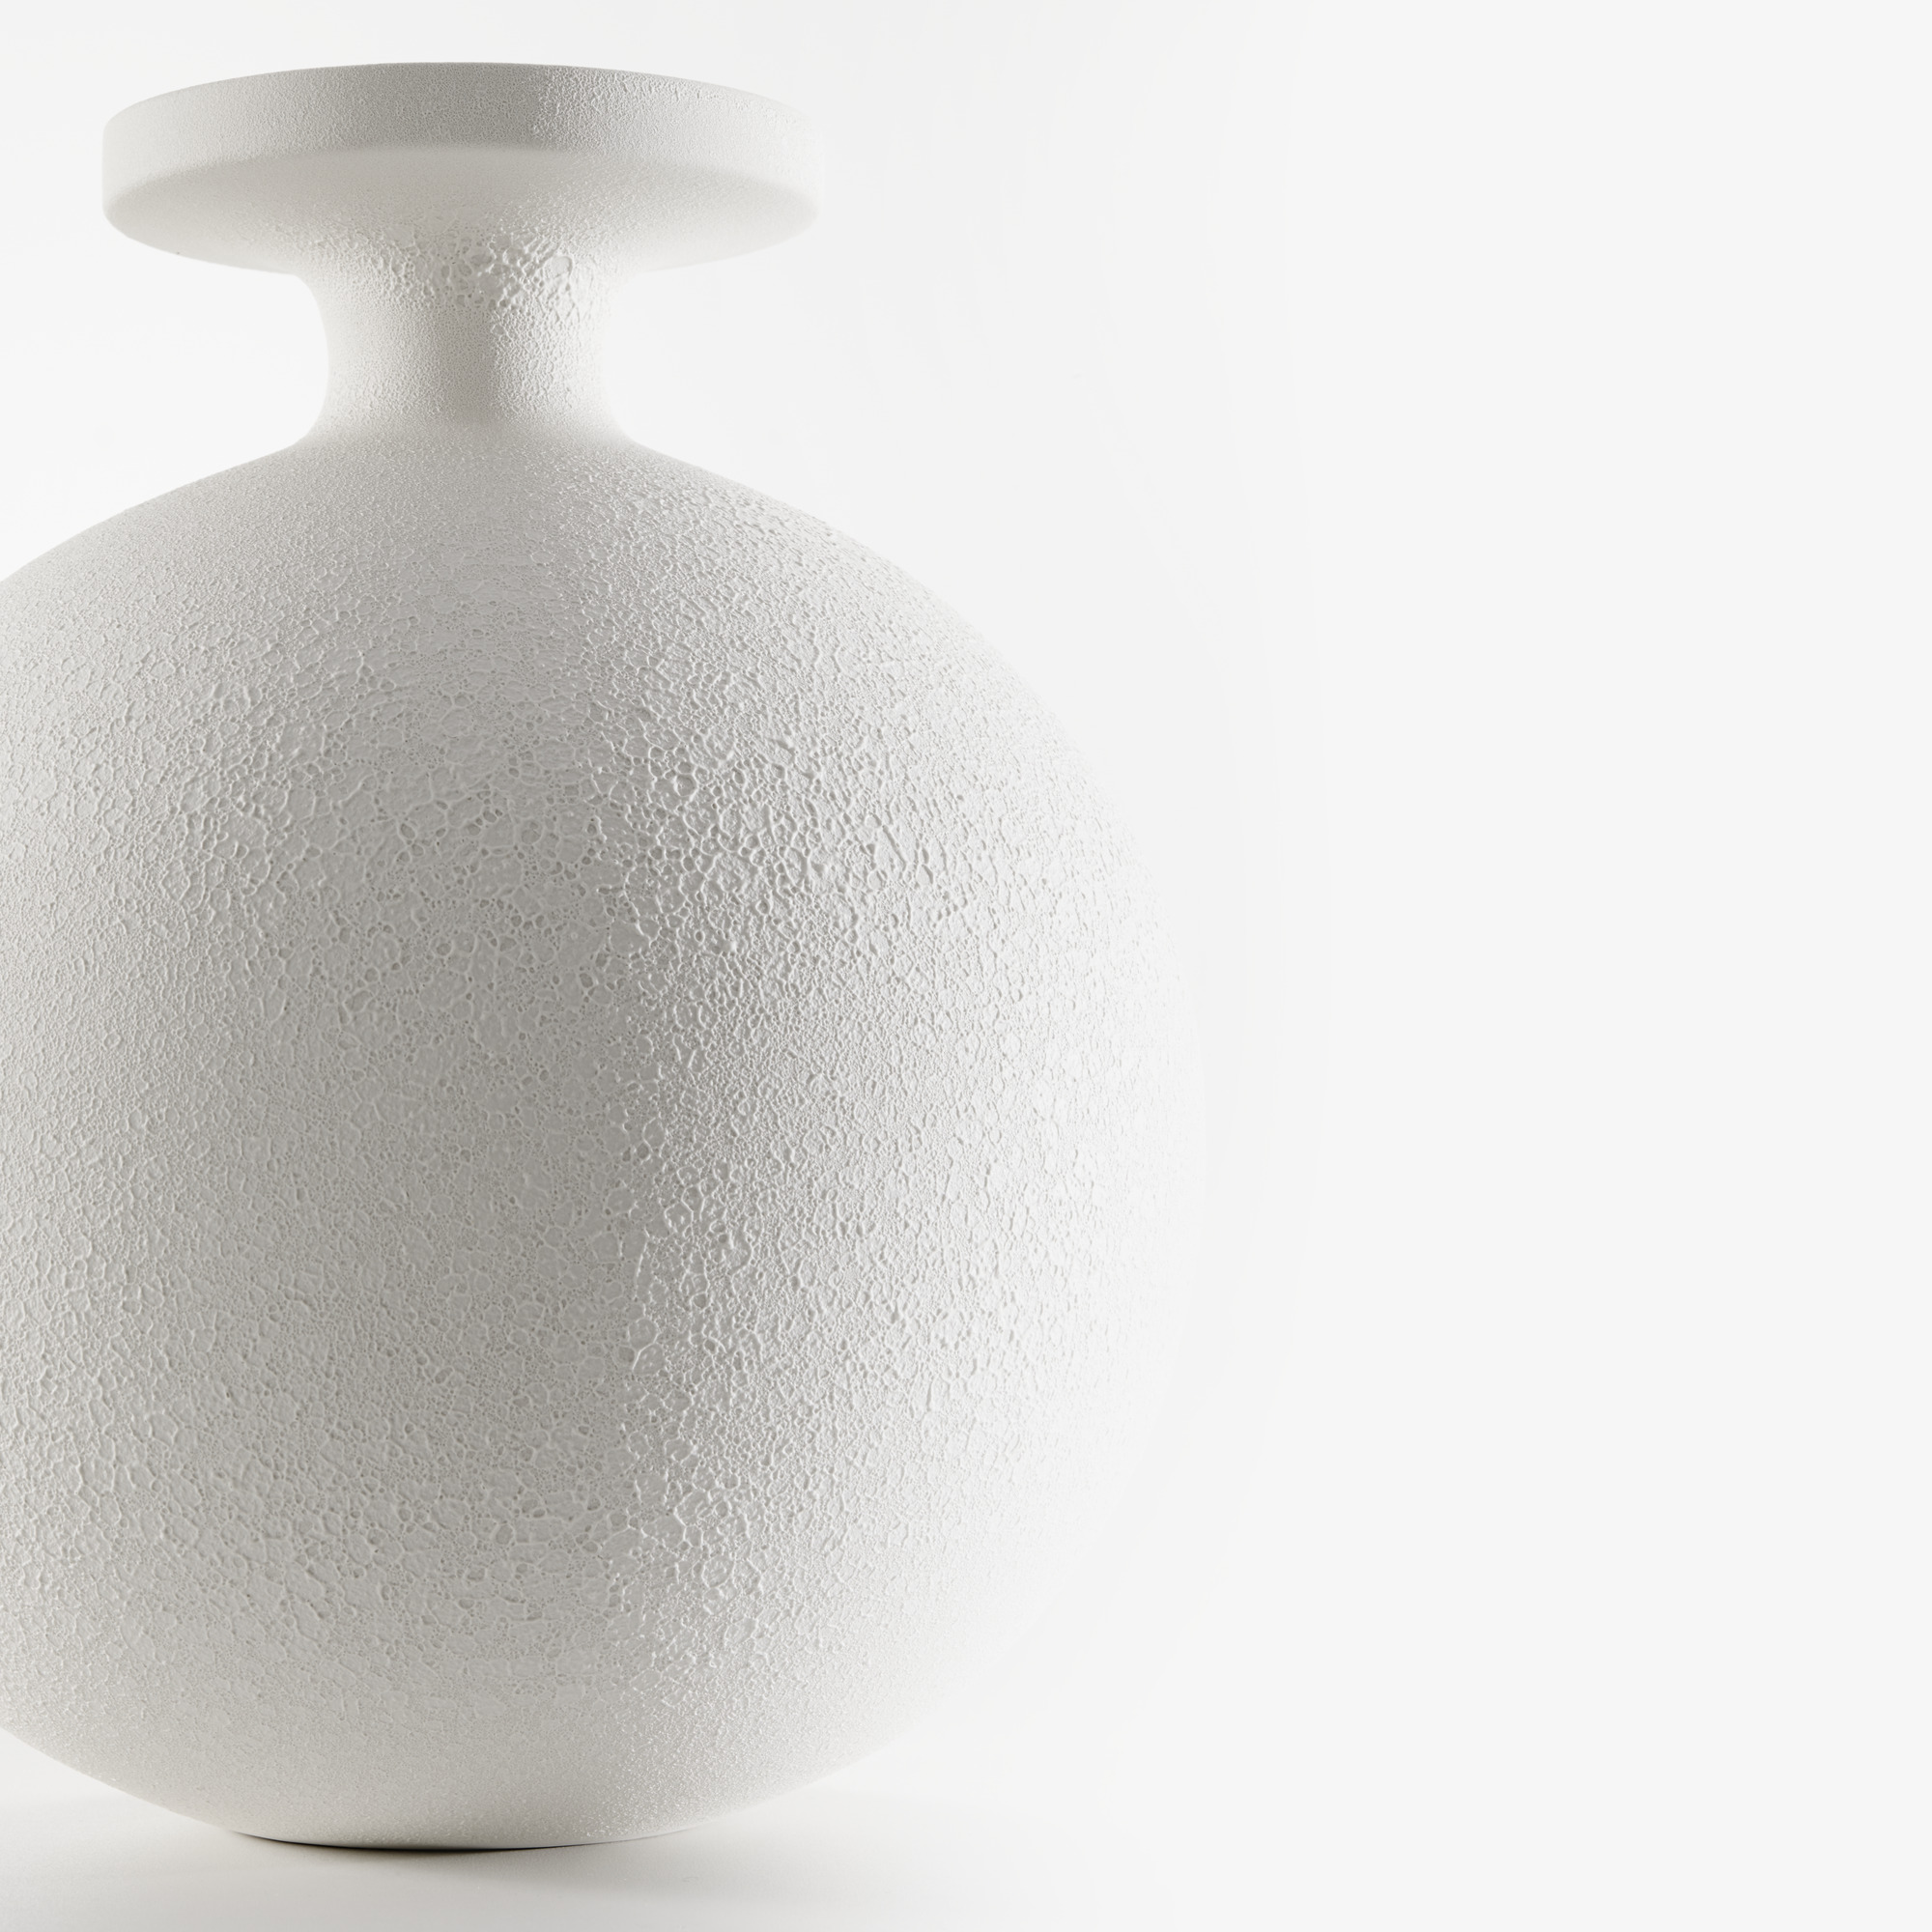 Image 花瓶 大型 白色 2